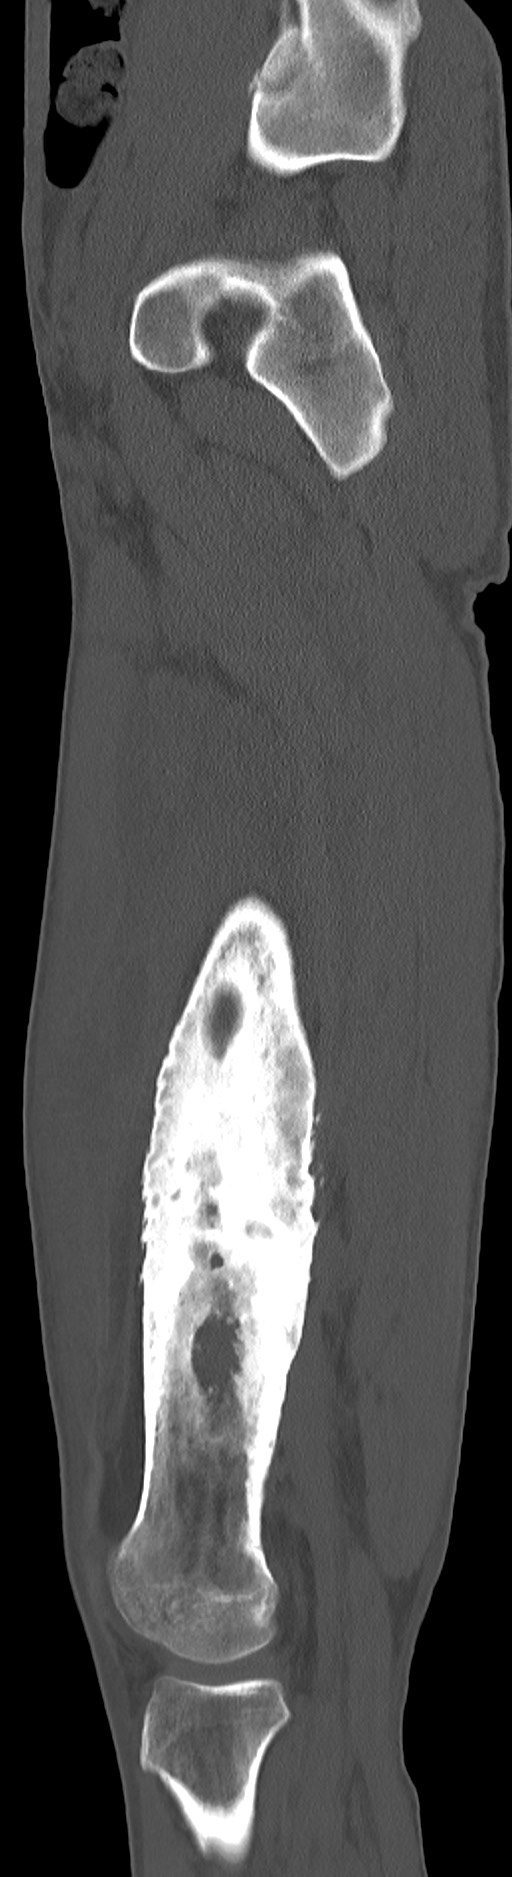 Chronic osteomyelitis (with sequestrum) (Radiopaedia 74813-85822 C 76).jpg